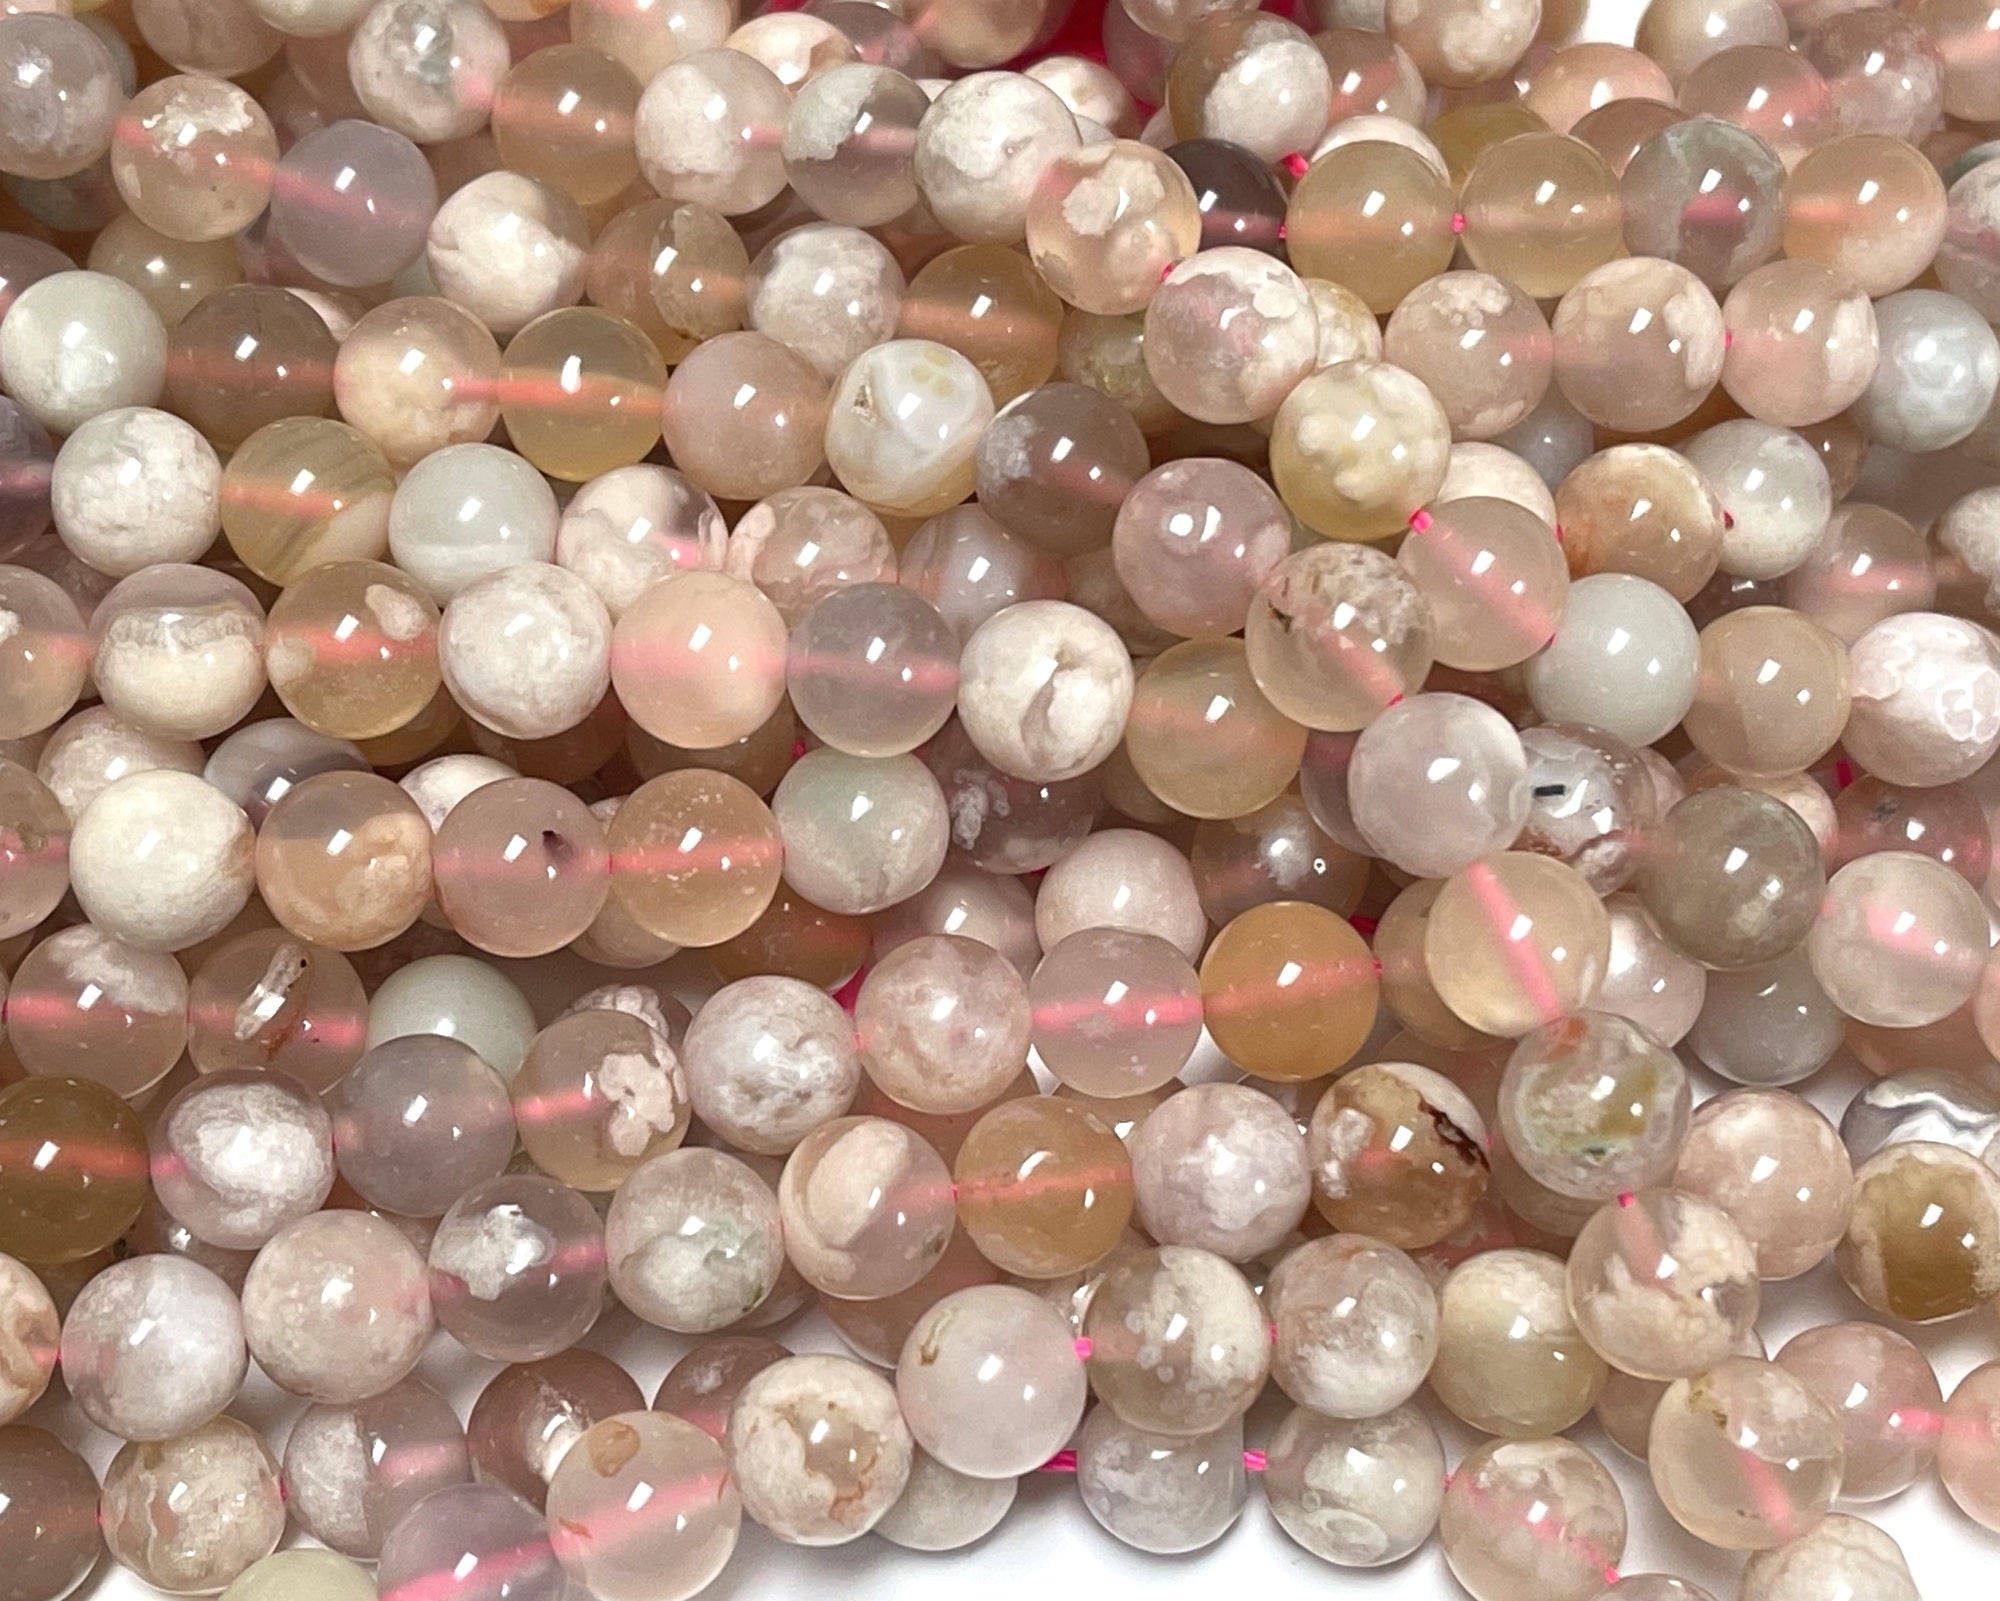 Madagascar Pink Sakura Agate 8mm round beads 15.5" strand - Oz Beads 